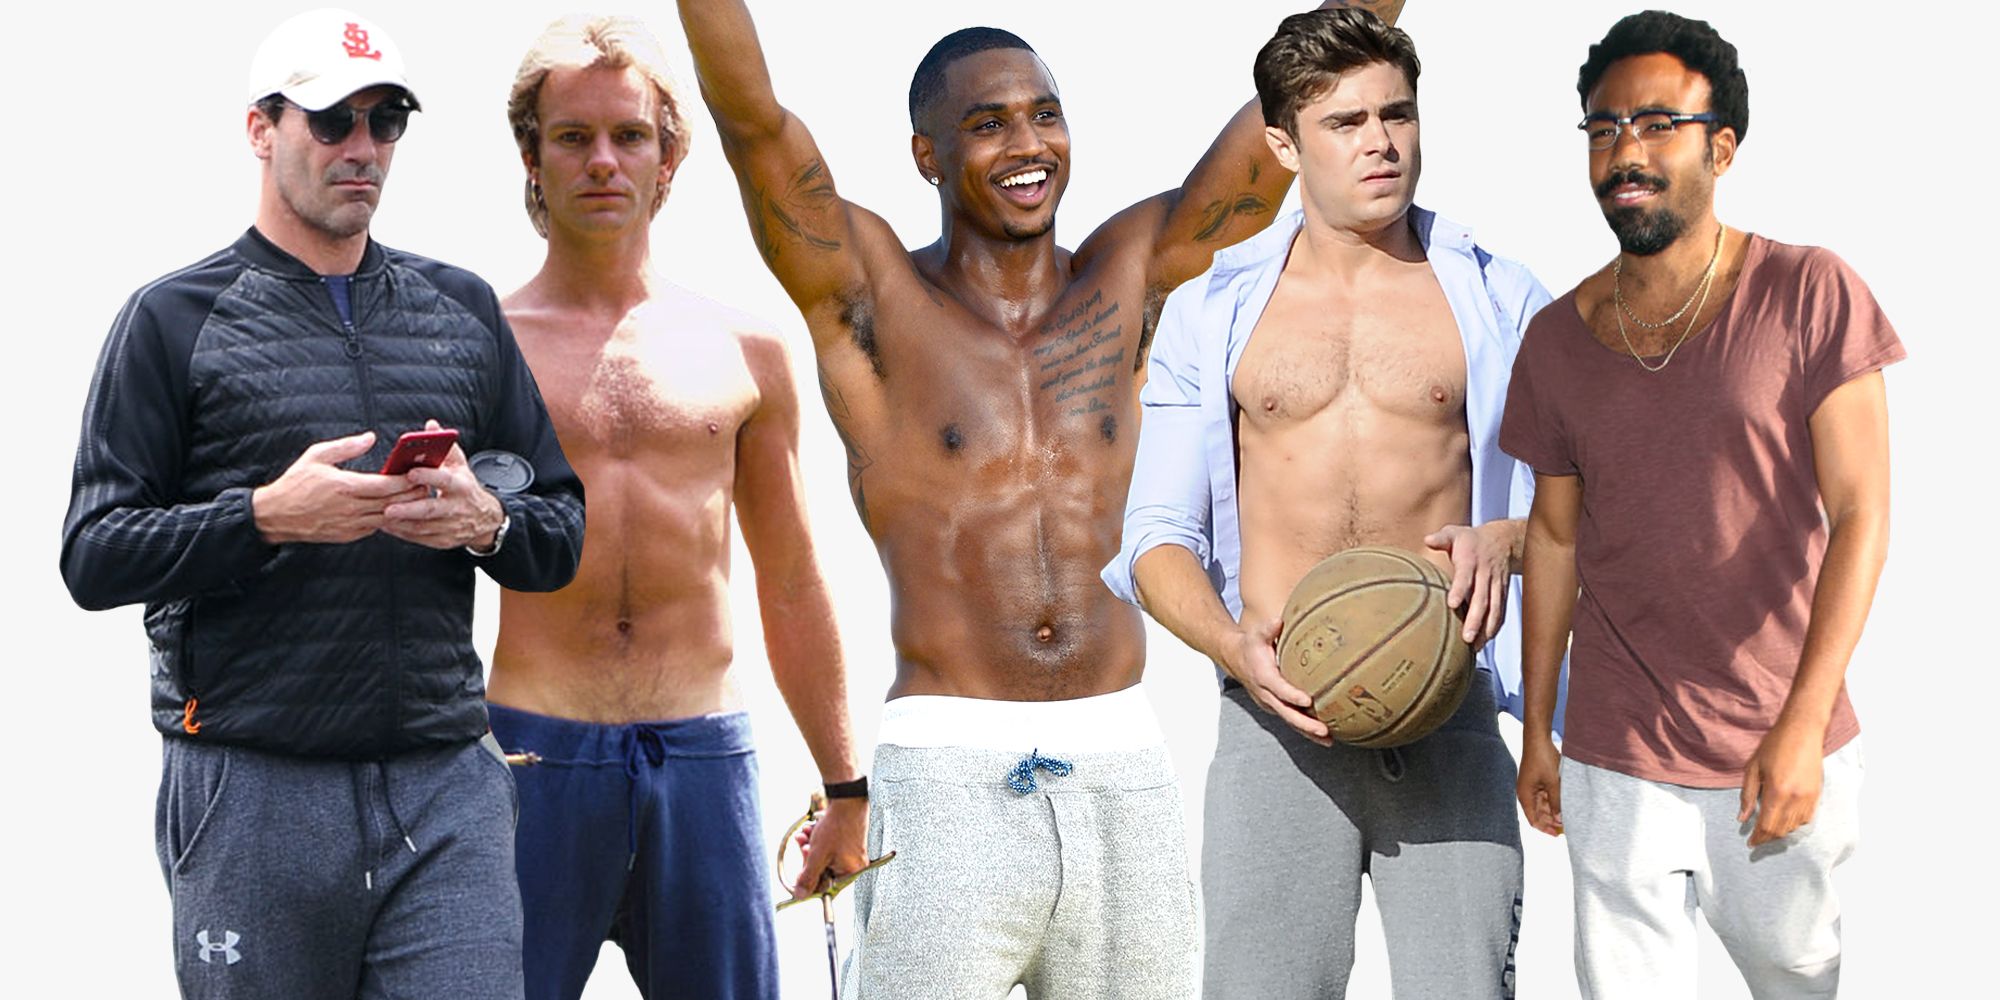 40 Hot Guys in Sweatpants